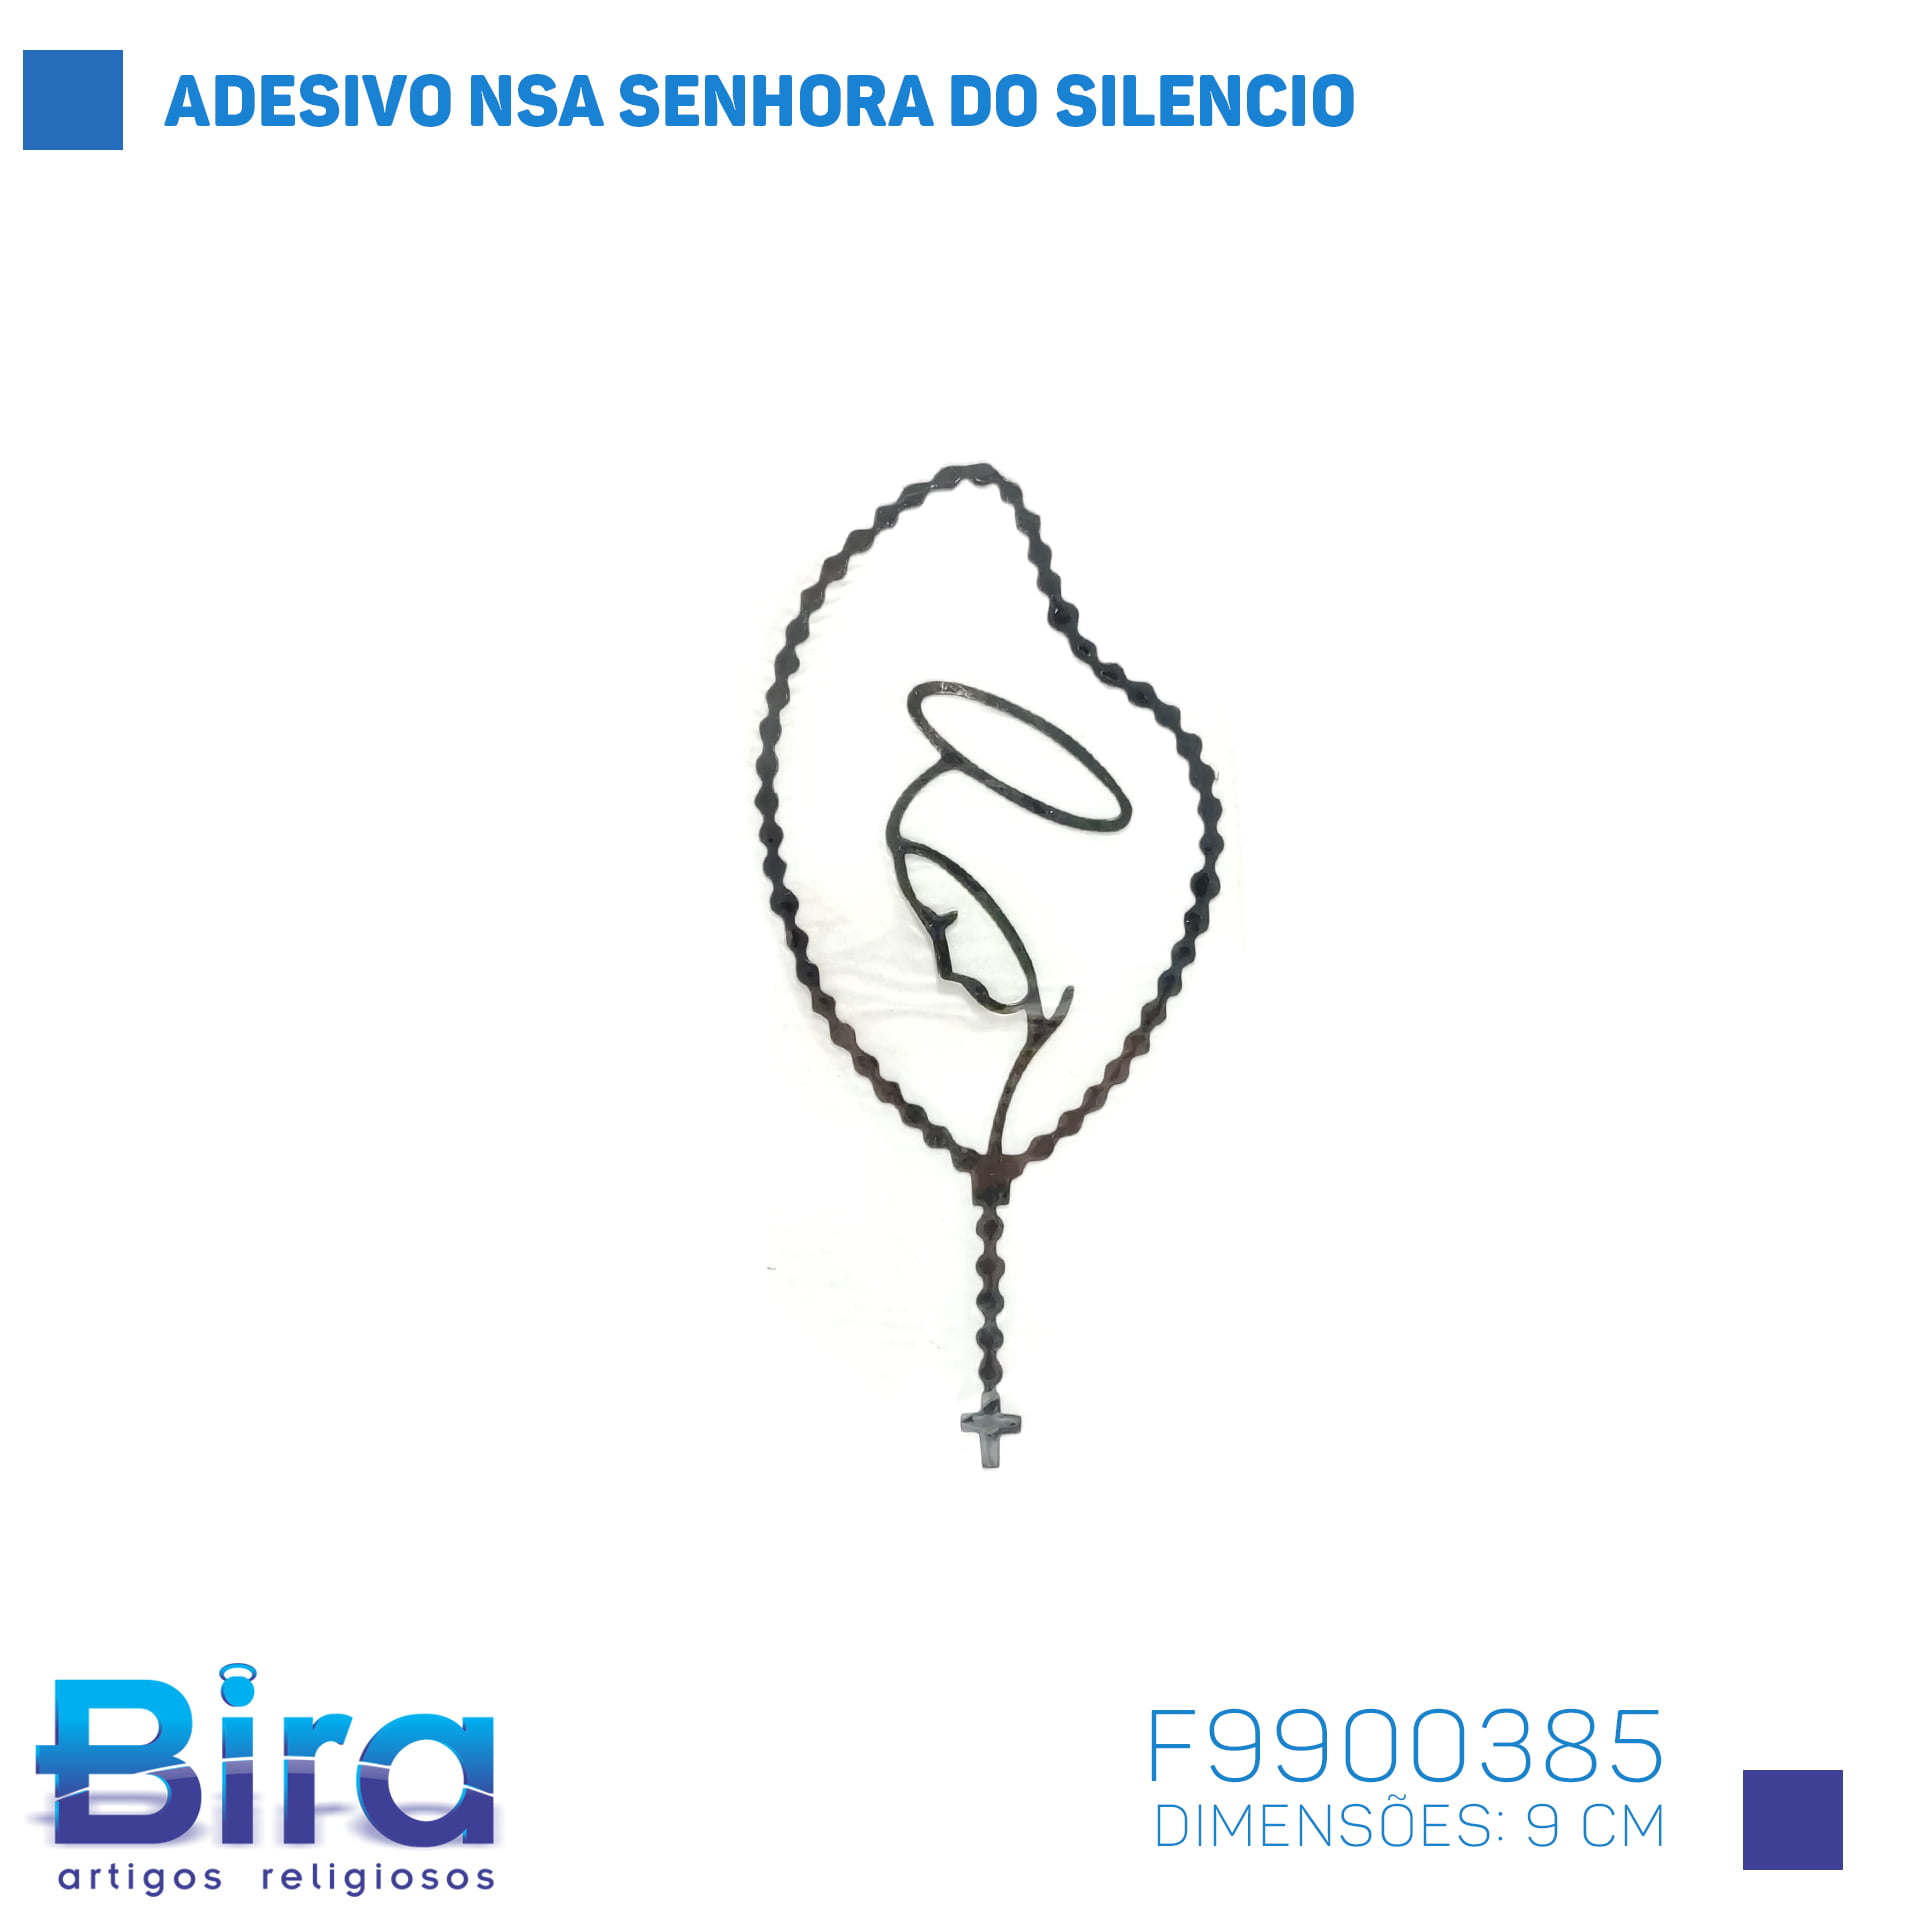 Bira Artigos Religiosos - ADESIVO  NOSSA SENHORA DO SILENCIO 9CM - Cód. F9900385